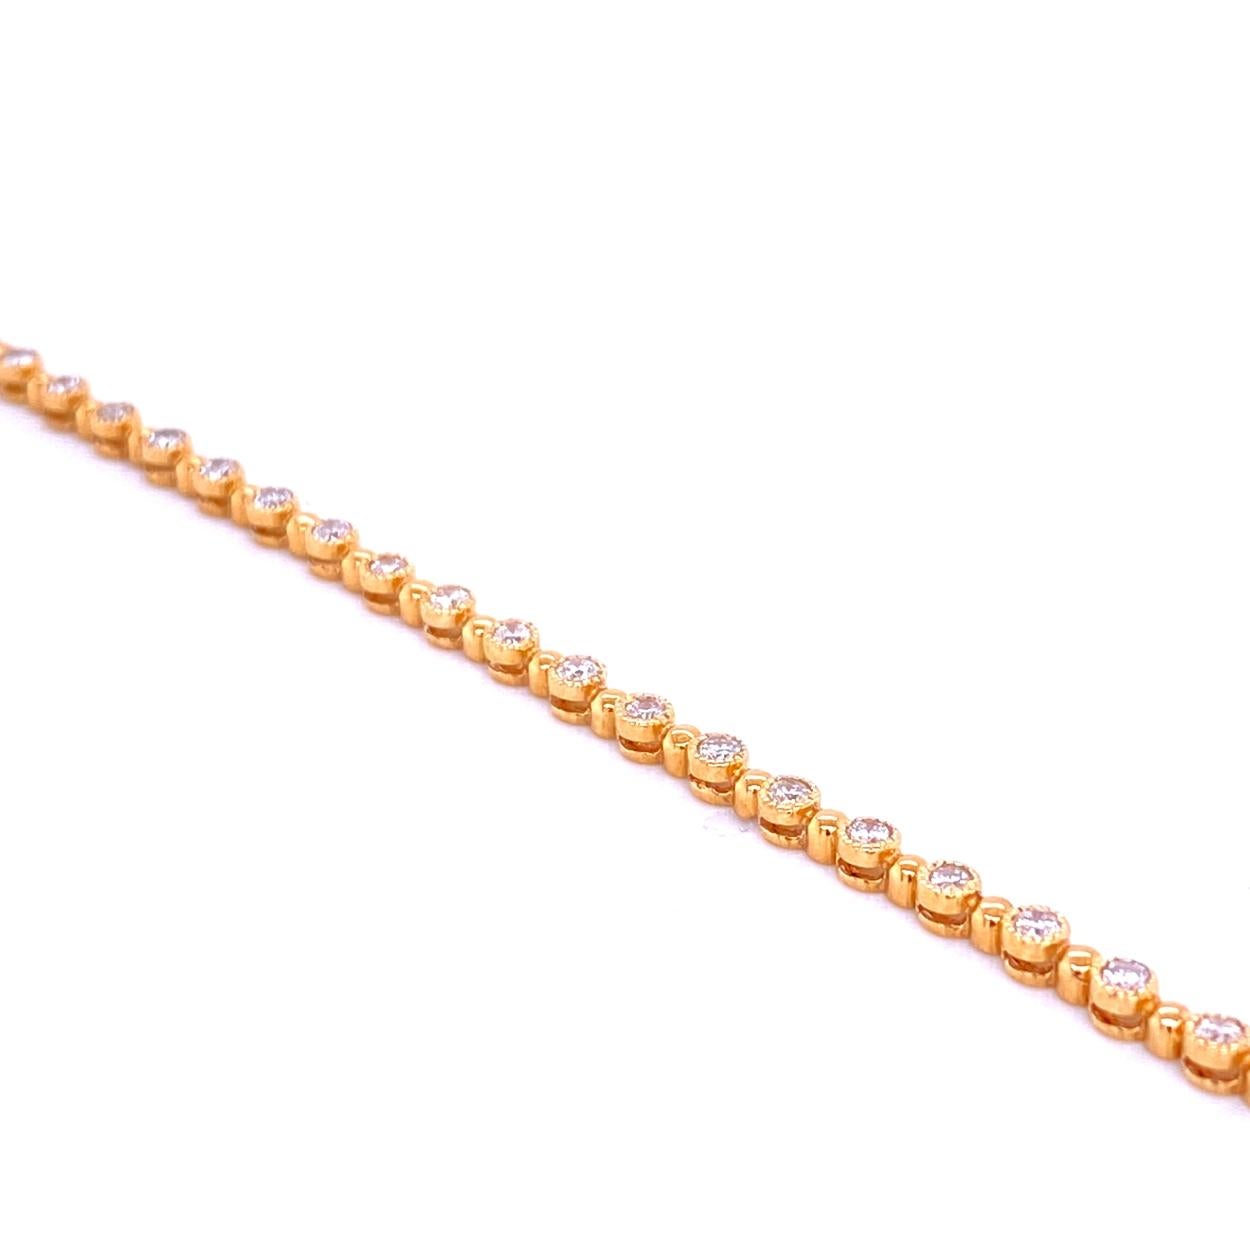 Ce bracelet en diamant est composé de 36 maillons sertis de diamants ronds de 1,8 mm de diamètre. Le bracelet est fabriqué en or 14 carats avec des bords à grains multiples pour une brillance maximale.  Le bracelet est muni d'un verrou intégré pour